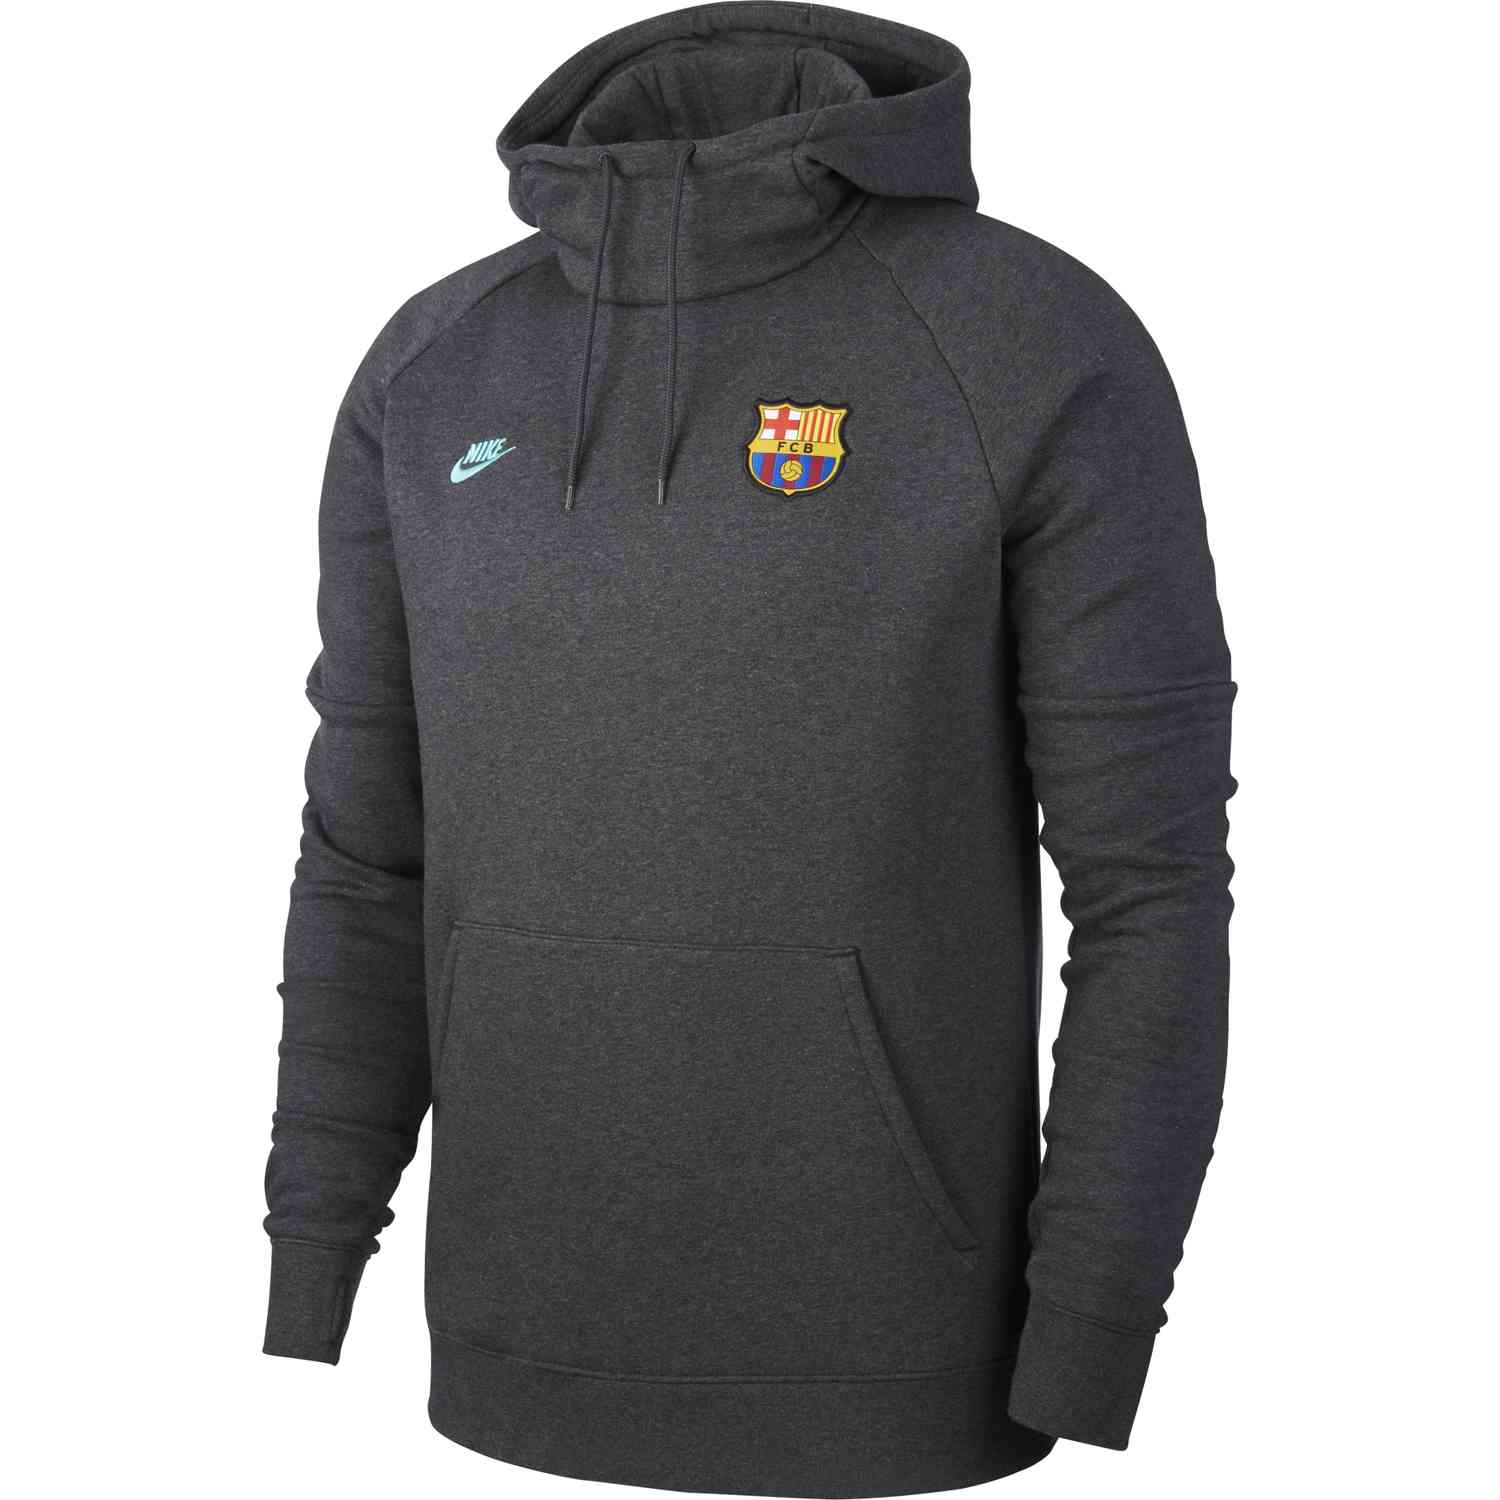 Ninguna Inmigración Centro de producción Nike Barcelona Pullover Fleece Hoodie - Anthracite/Dark Grey/Cabana -  SoccerPro